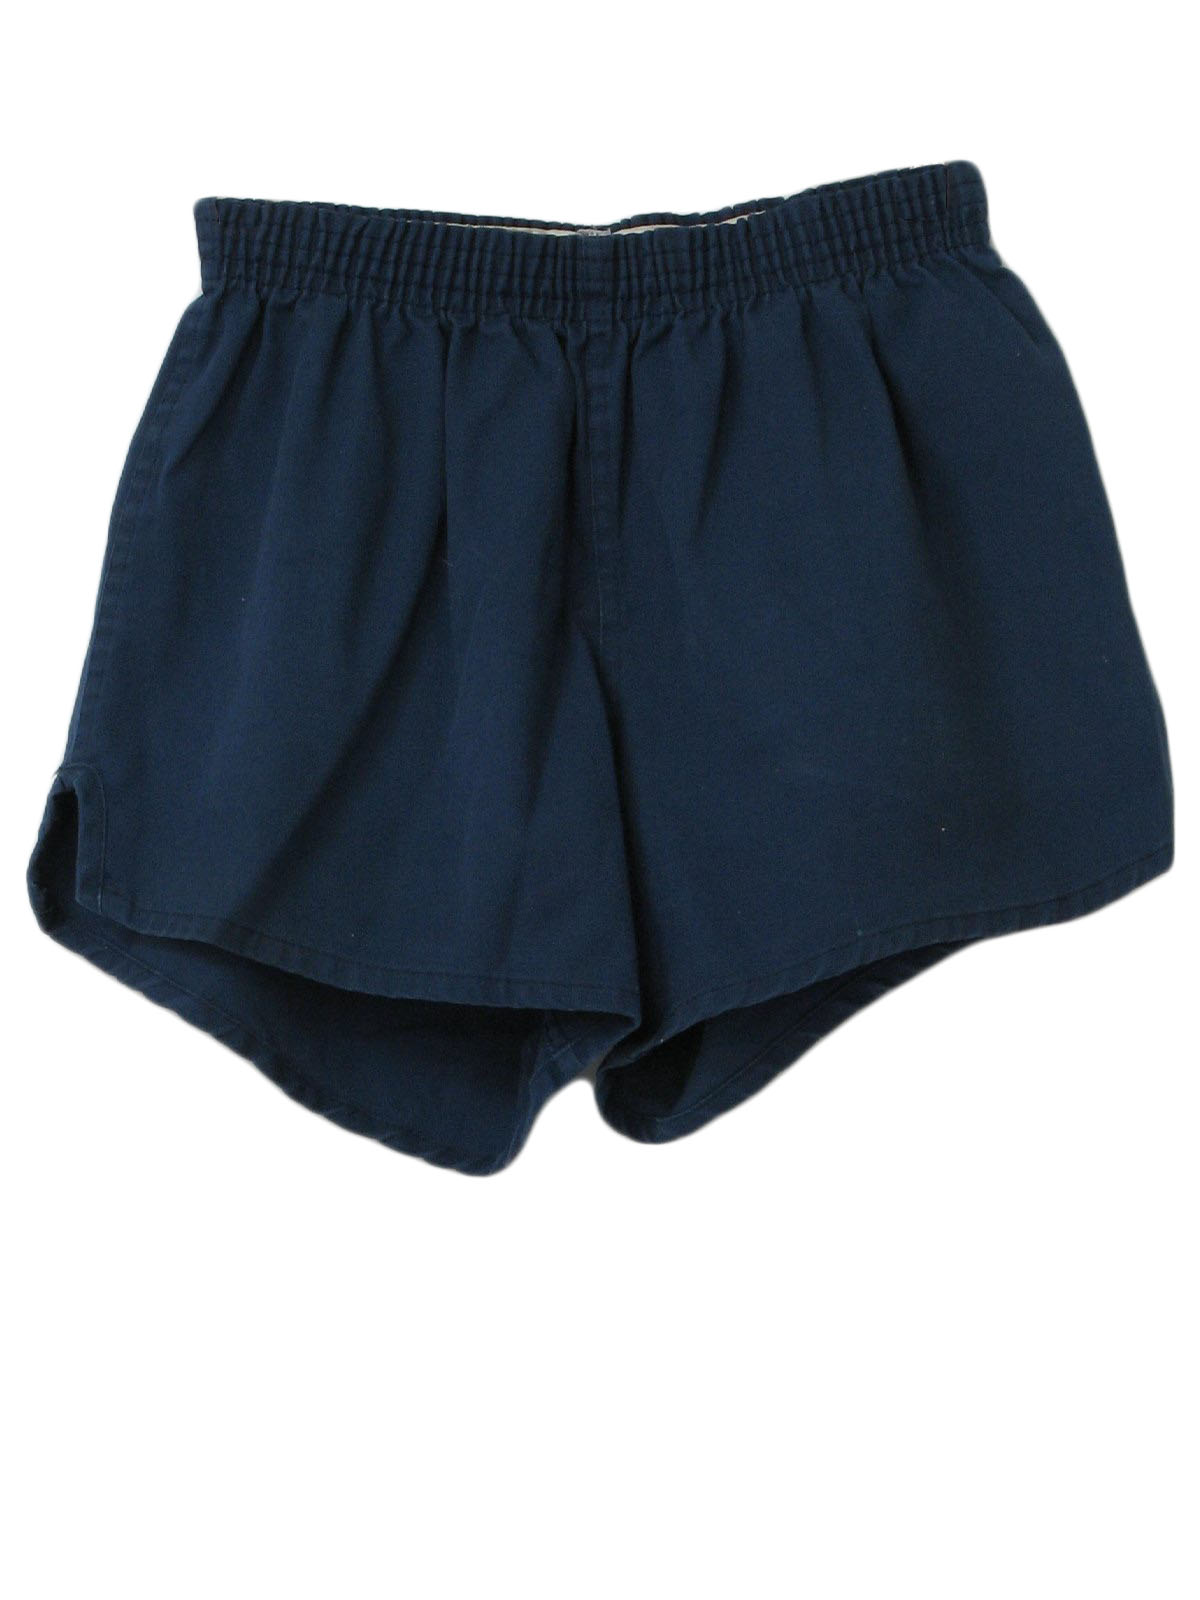 Retro 80s Shorts (Soffe Shorts) : 80s -Soffe Shorts- Mens faded blue ...